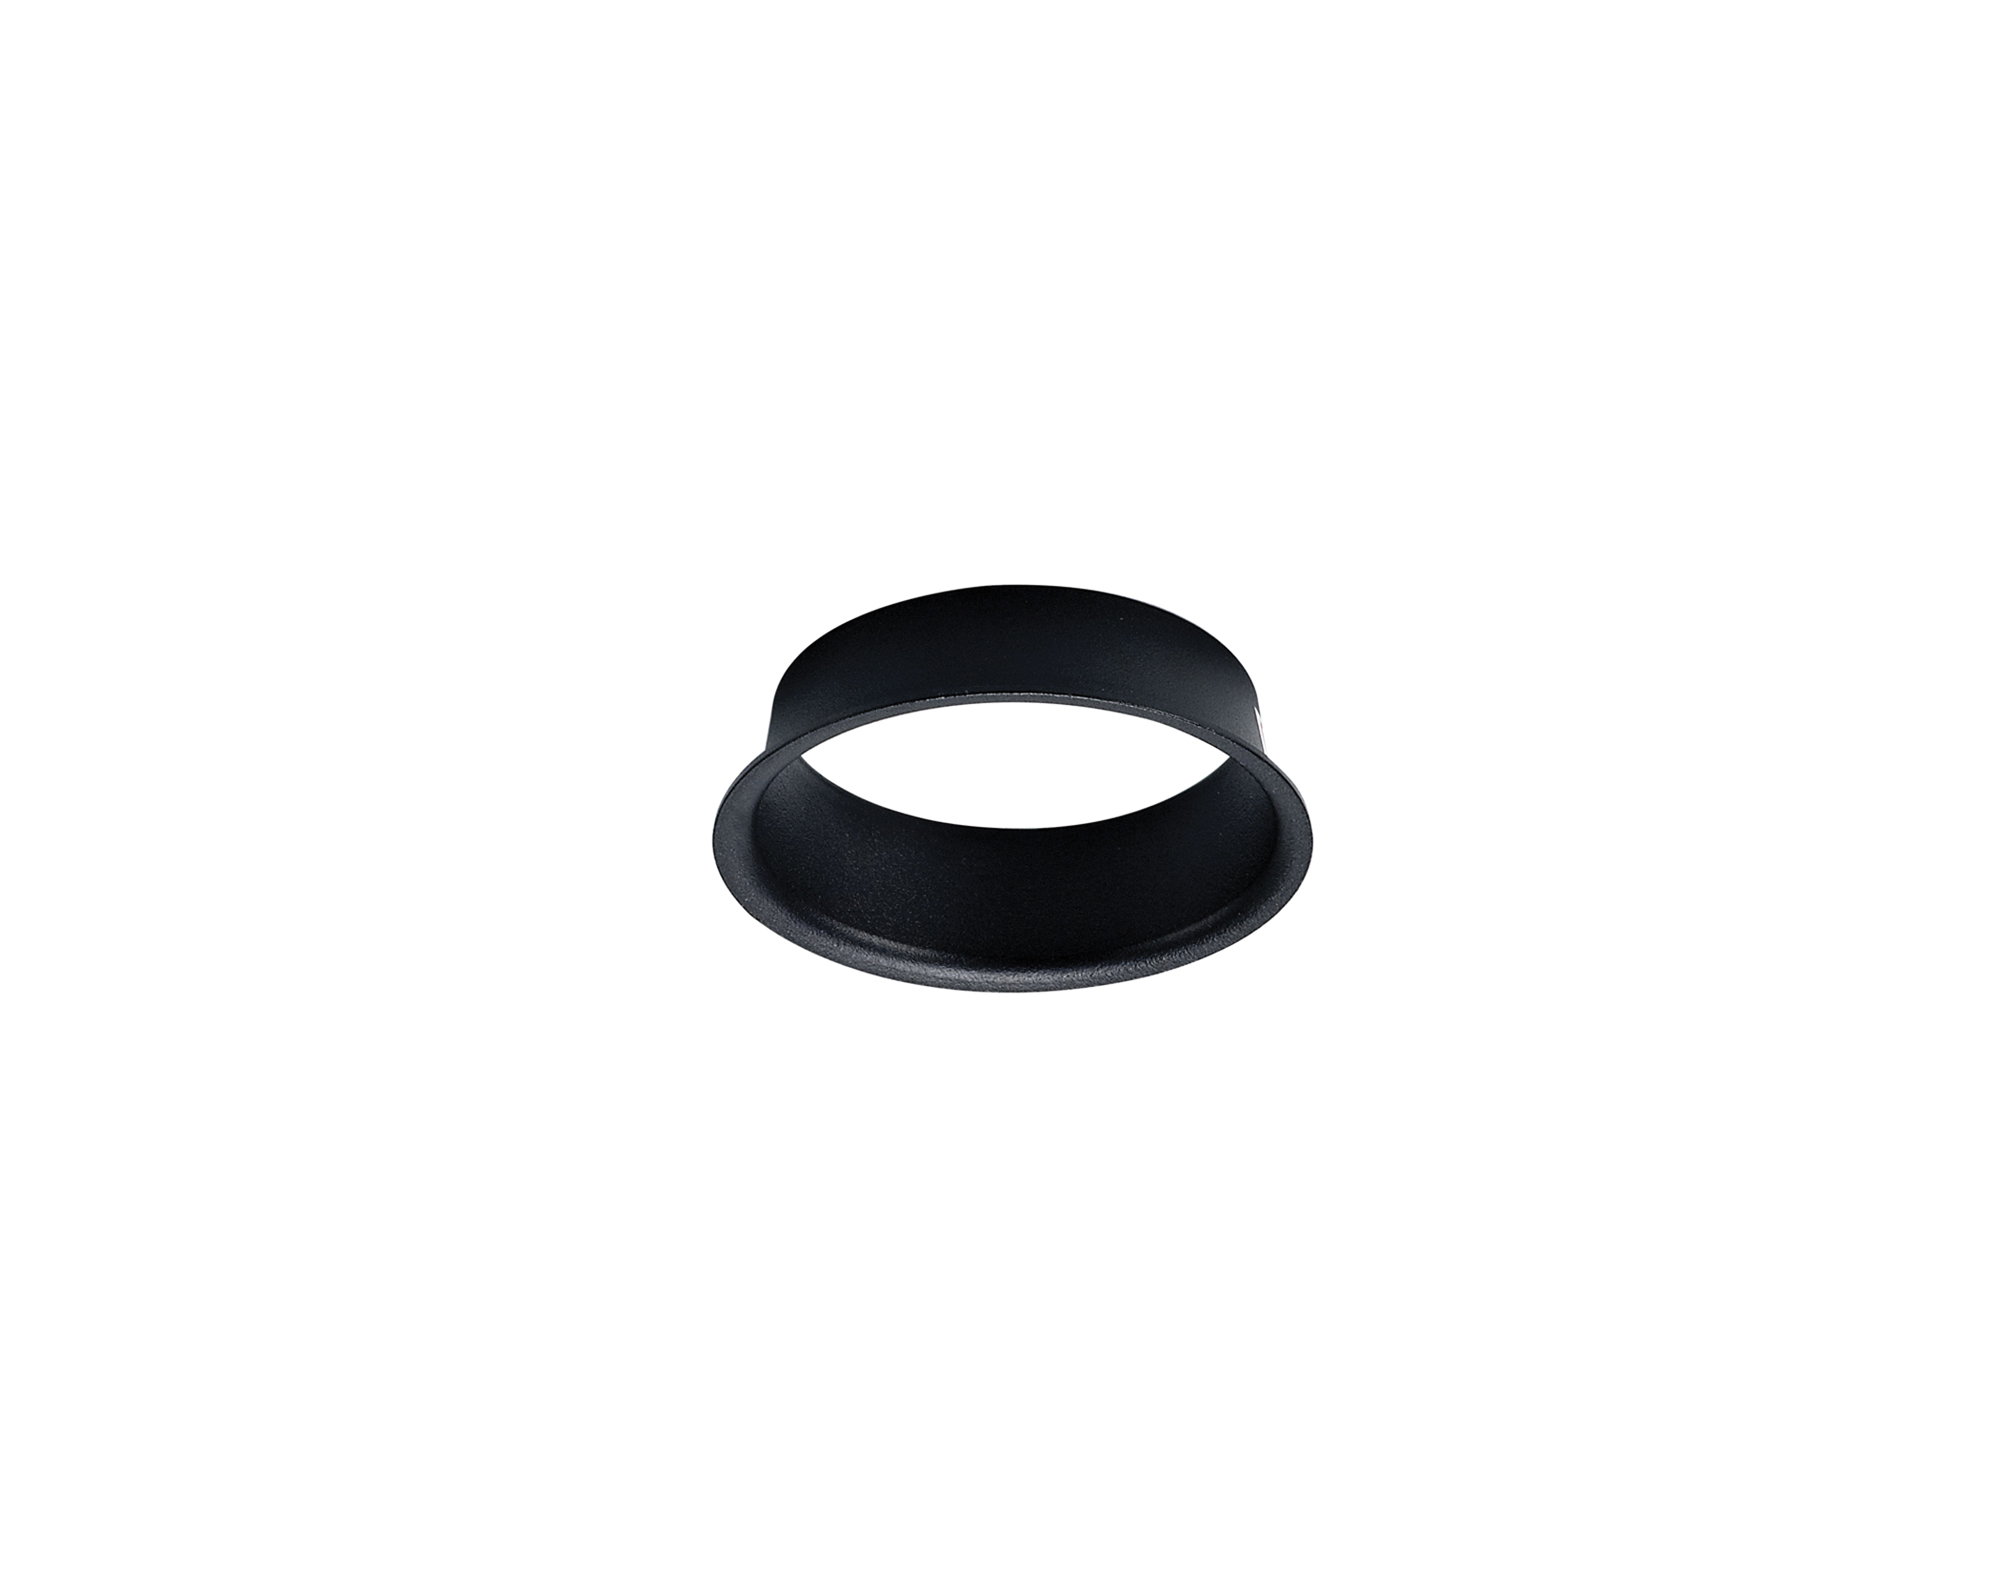 DX200386  Bodar Anti Glare Ring, Matt Black, Suitable for All Boda Frames